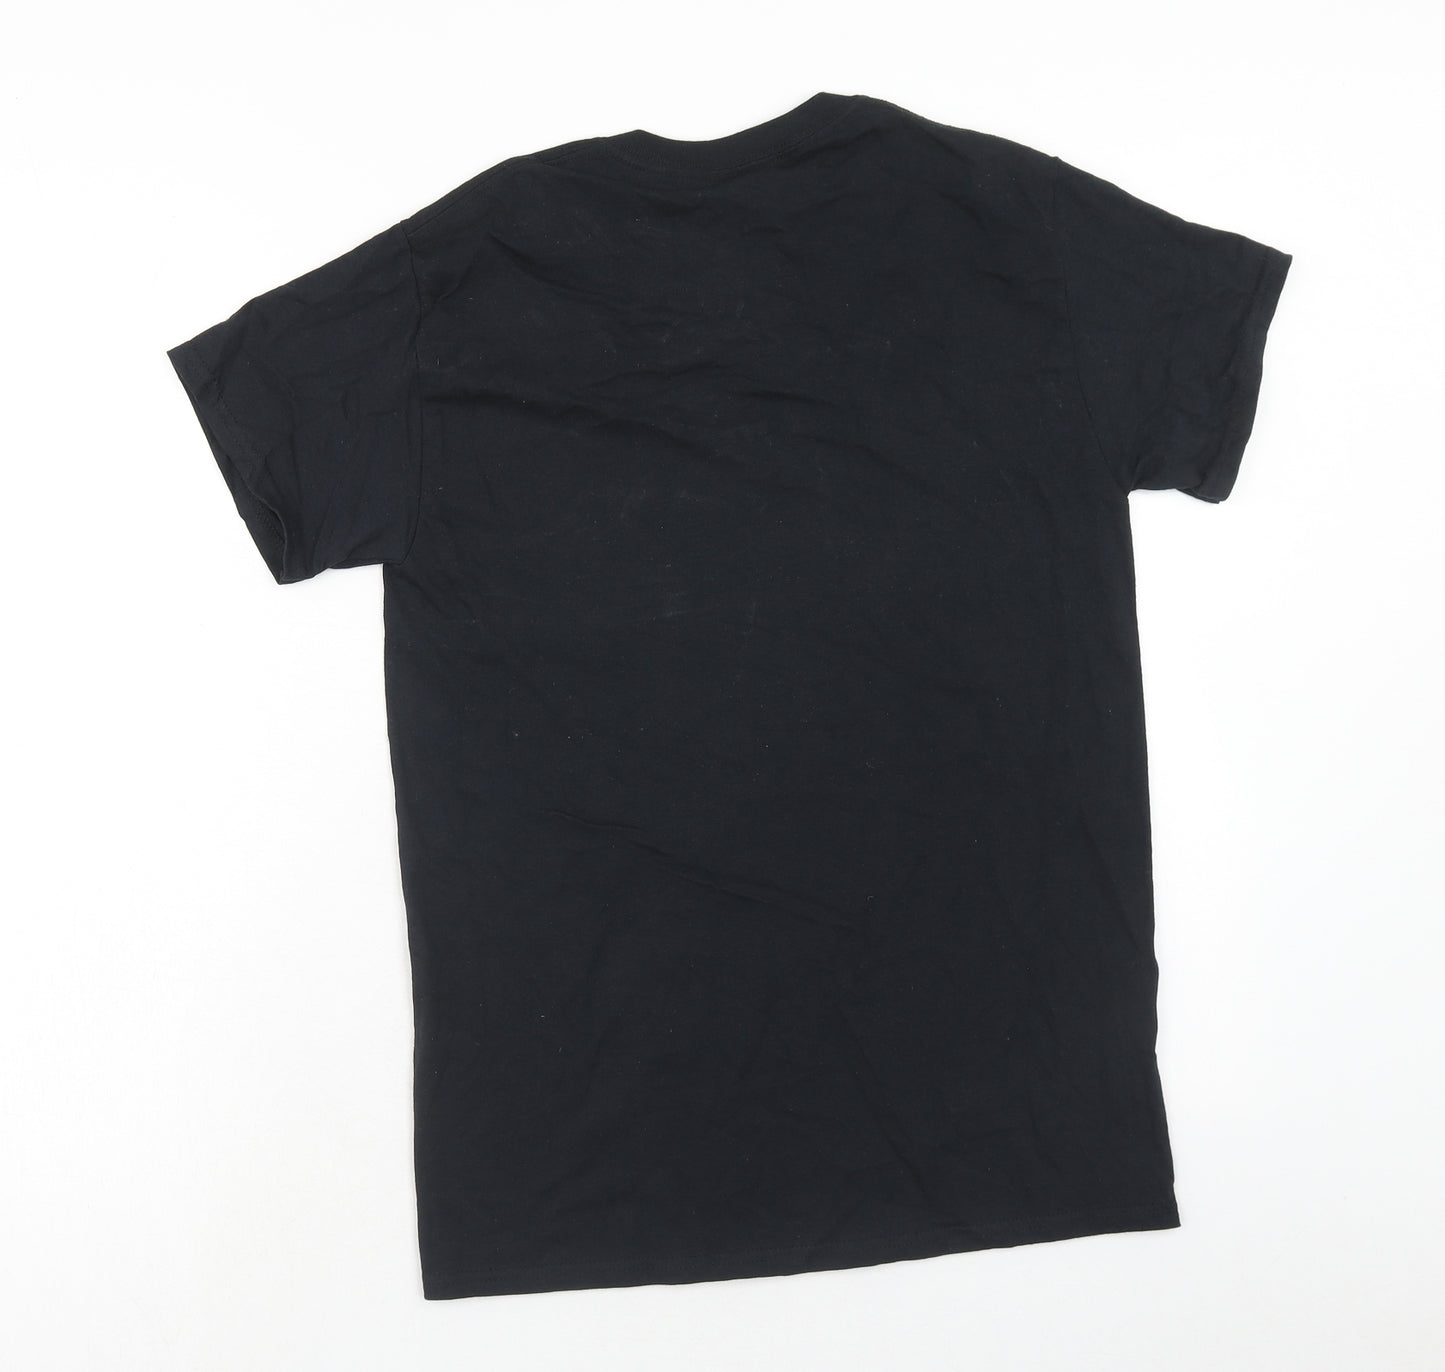 Gildan Mens Black Cotton T-Shirt Size S Round Neck - Saint